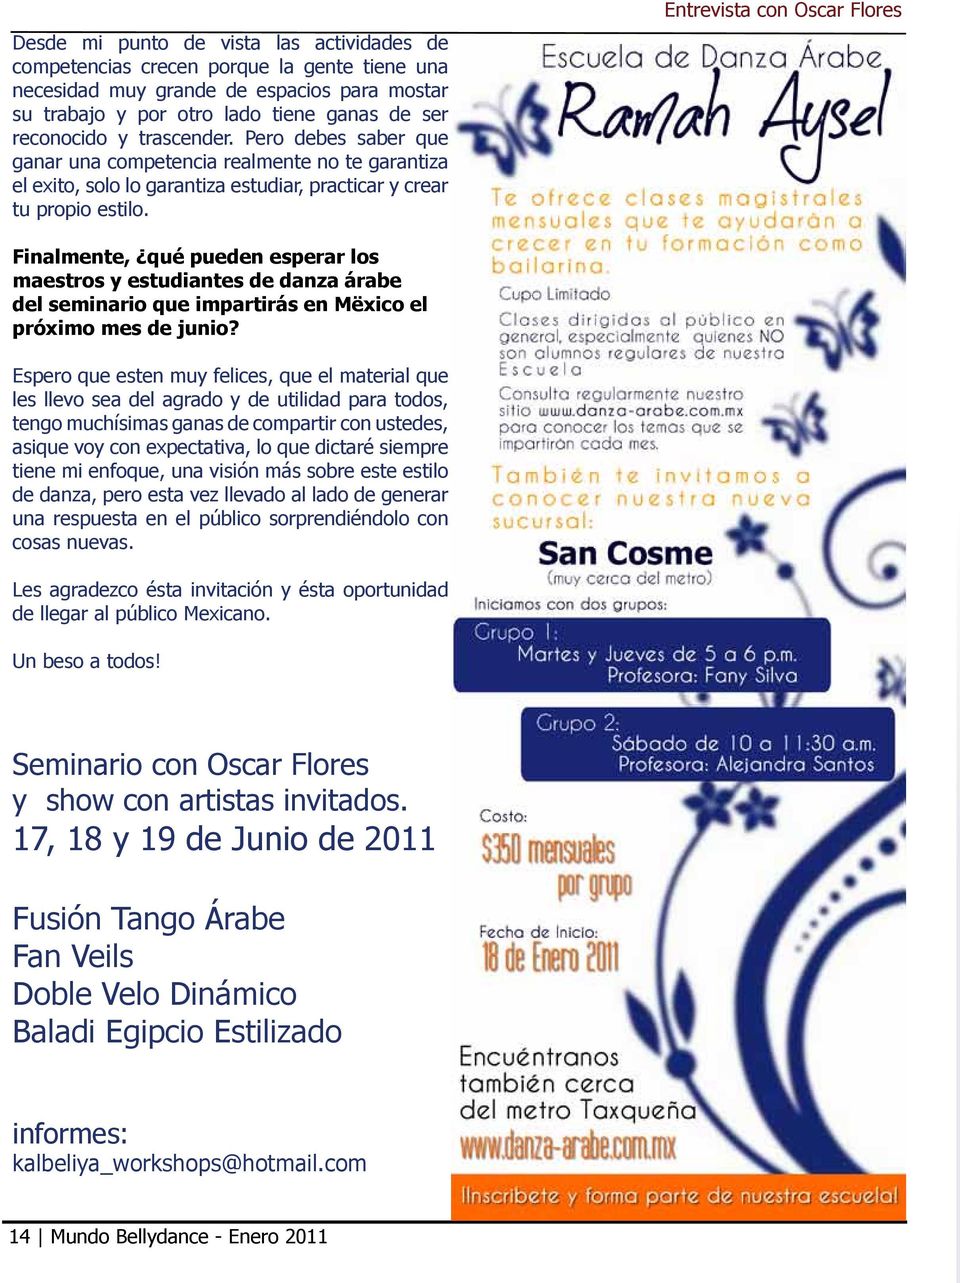 Entrevista con Oscar Flores Finalmente, qué pueden esperar los maestros y estudiantes de danza árabe del seminario que impartirás en Mëxico el próximo mes de junio?